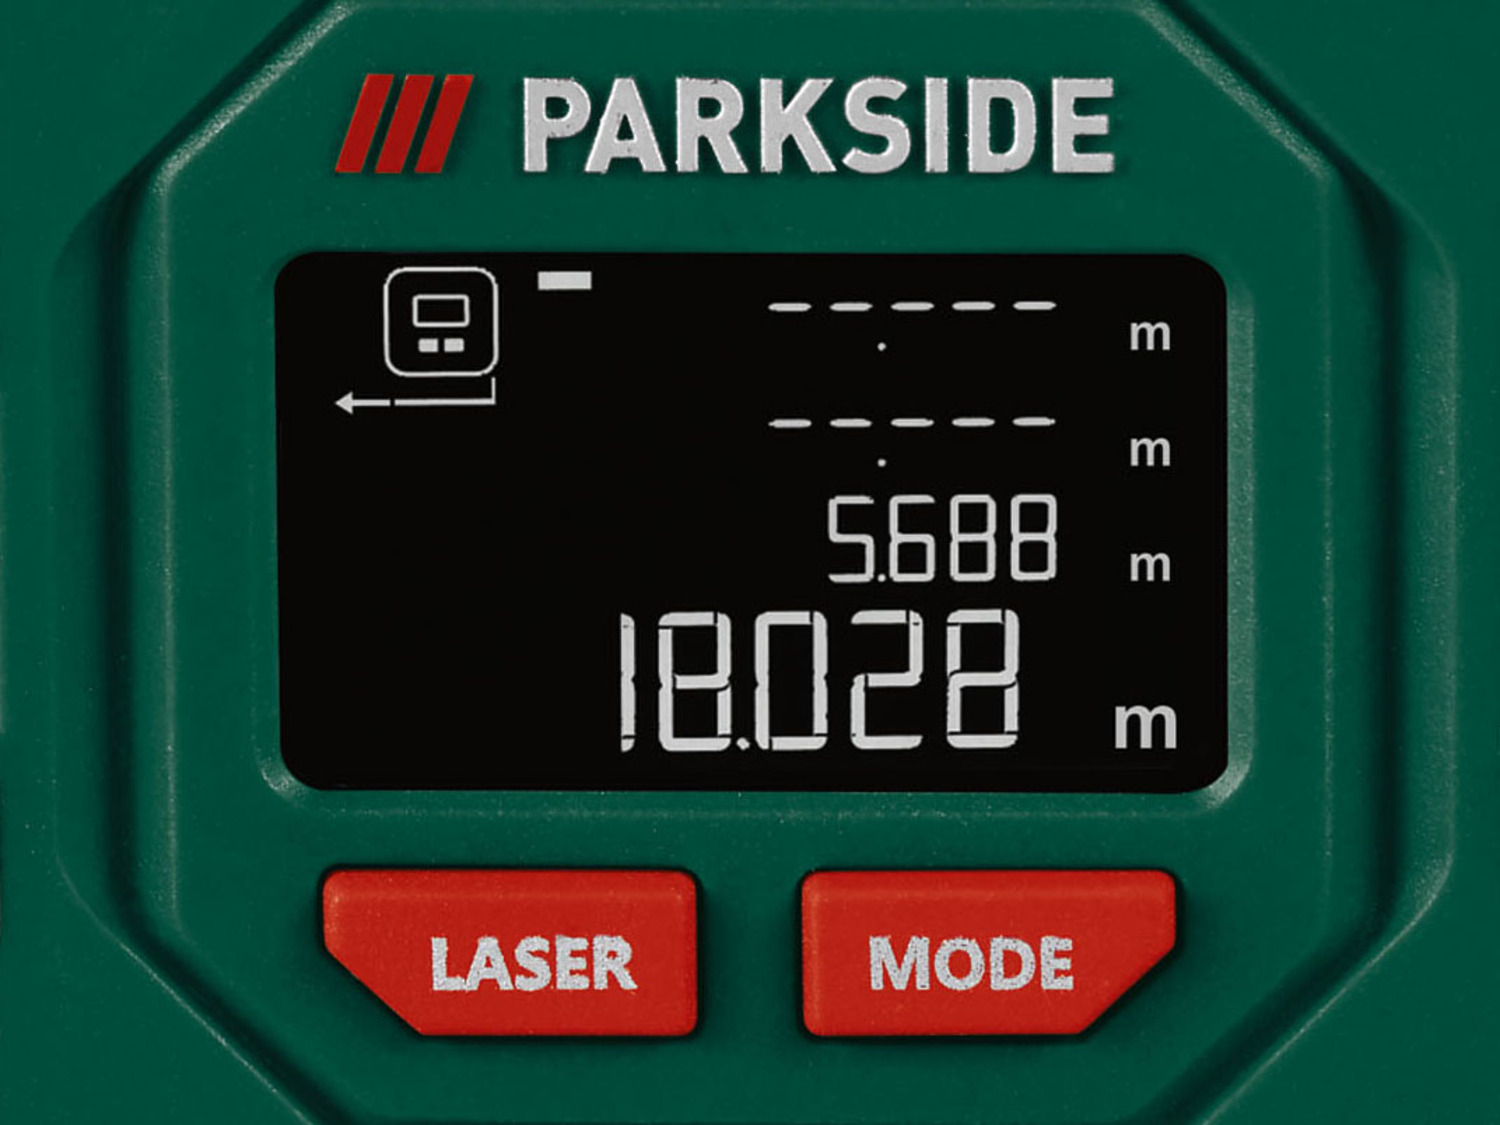 PARKSIDE® Télémètre laser sans fil avec mètre ruban PL…